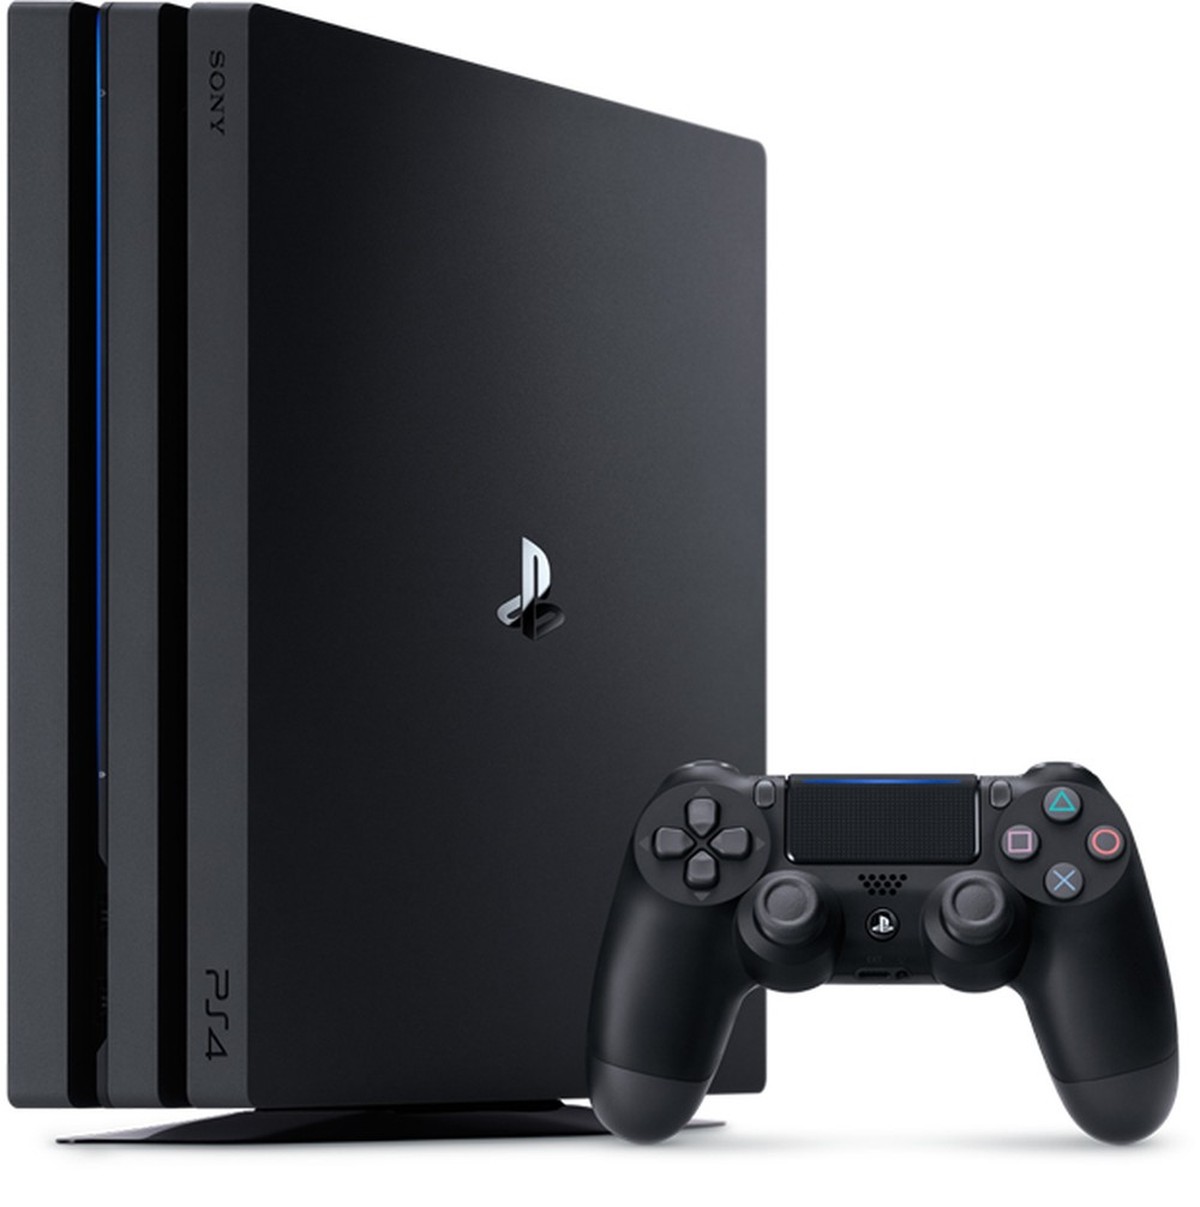 O menor preço de PlayStation 5 já visto até hoje; confira aqui